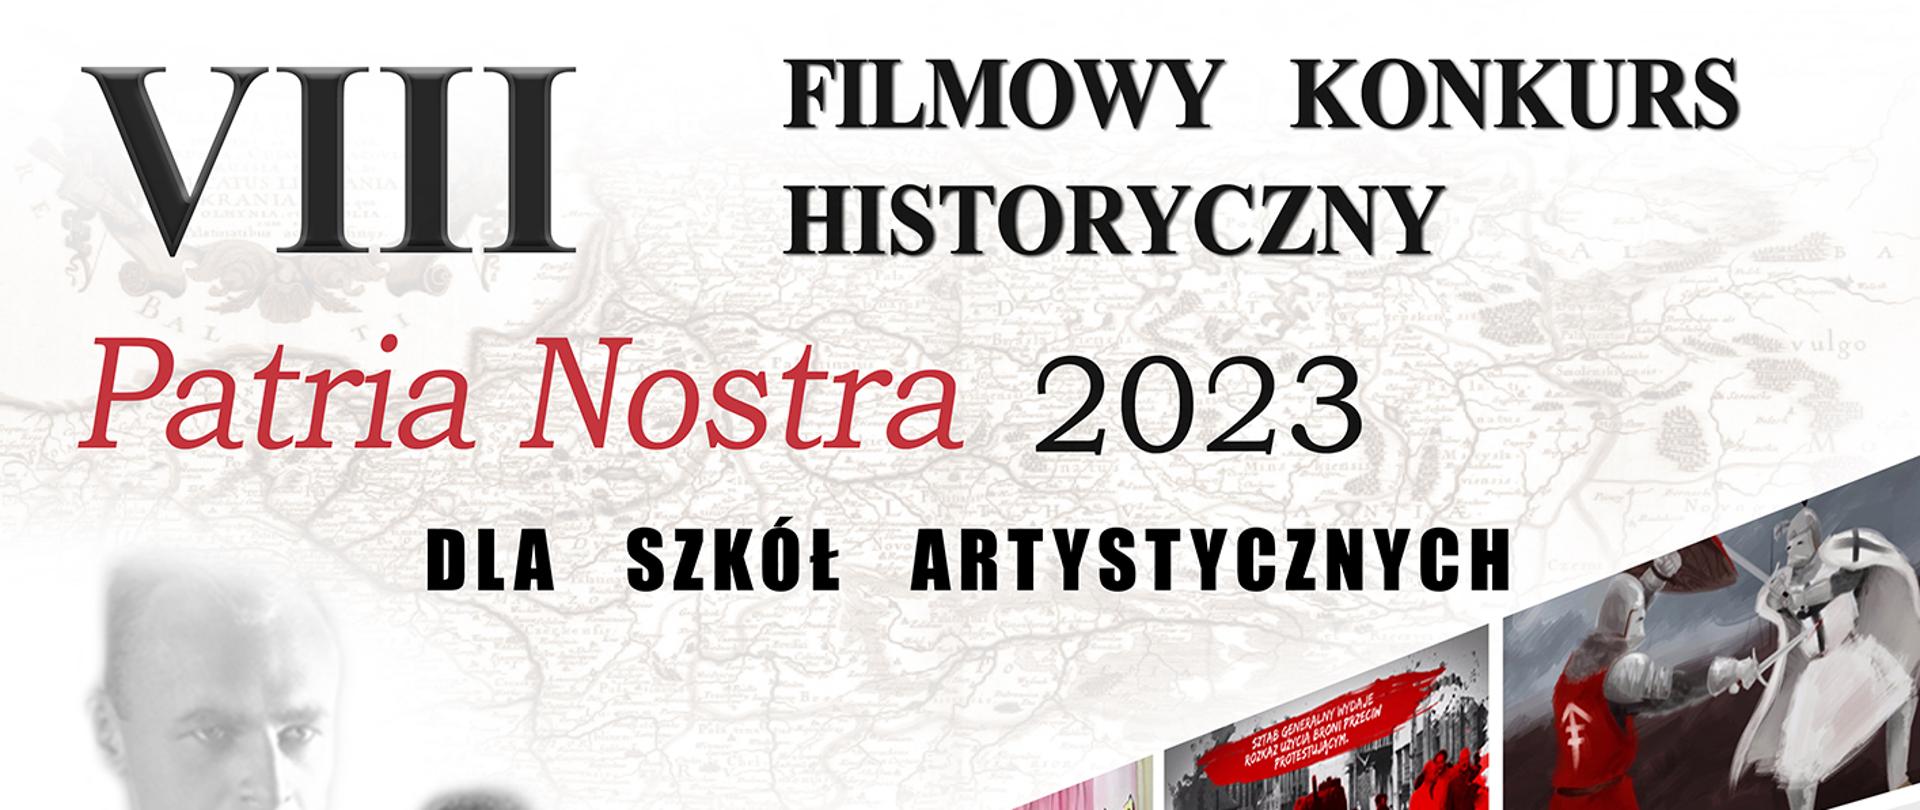 Plakat biało czerwony Konkursu Patria Nostra 2023 z postaciami znanych Polaków i informacją o konkursie